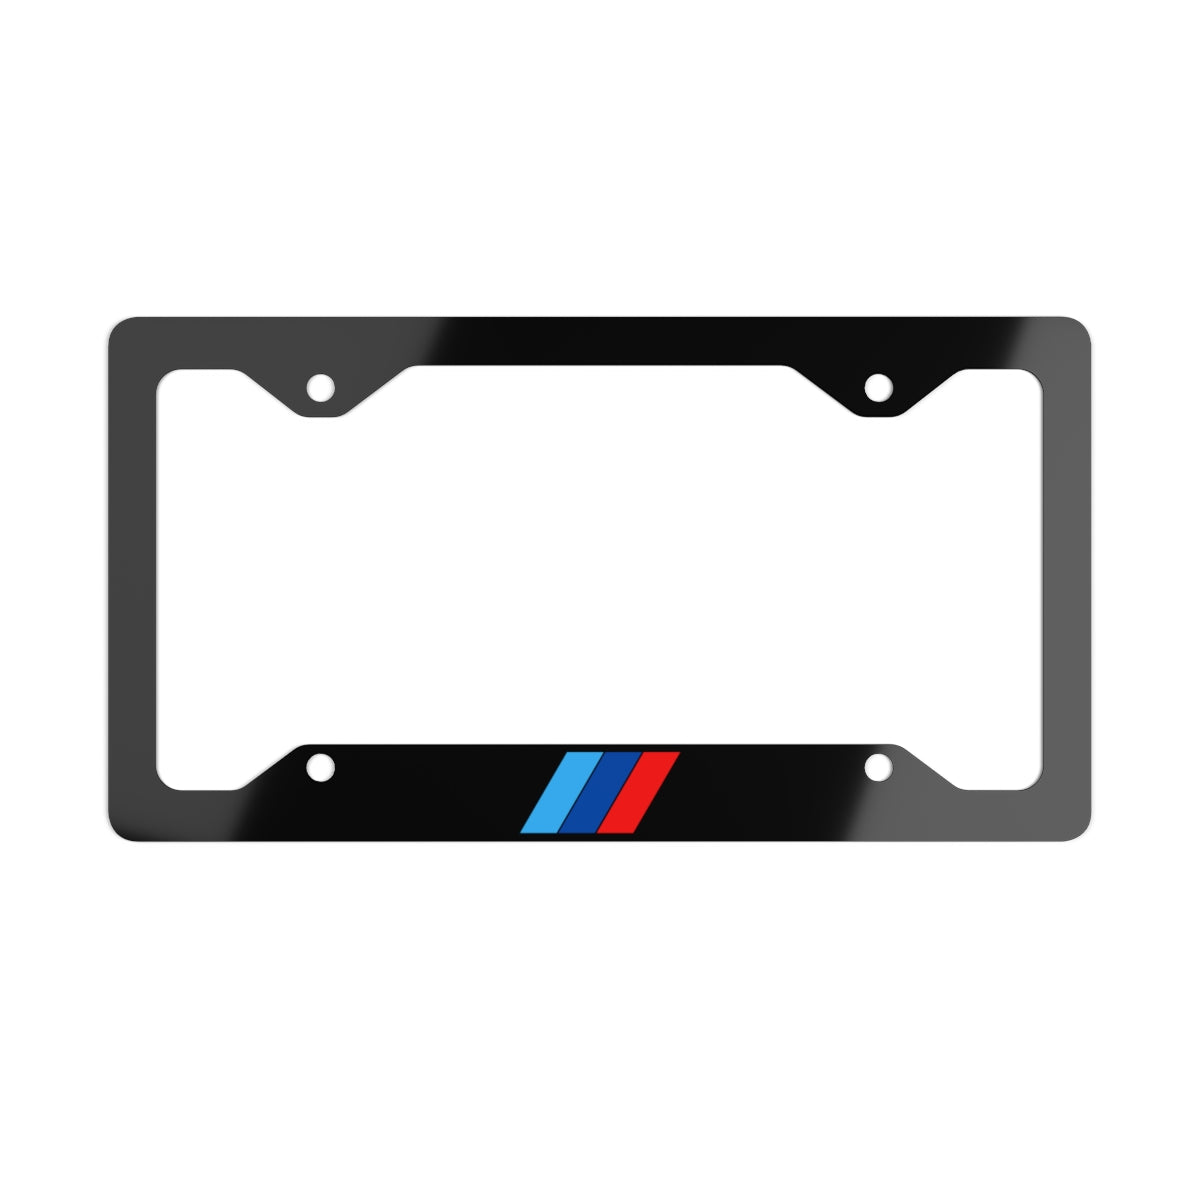 Bimmer S55 / M Stripes Metal License Plate Frame - Black